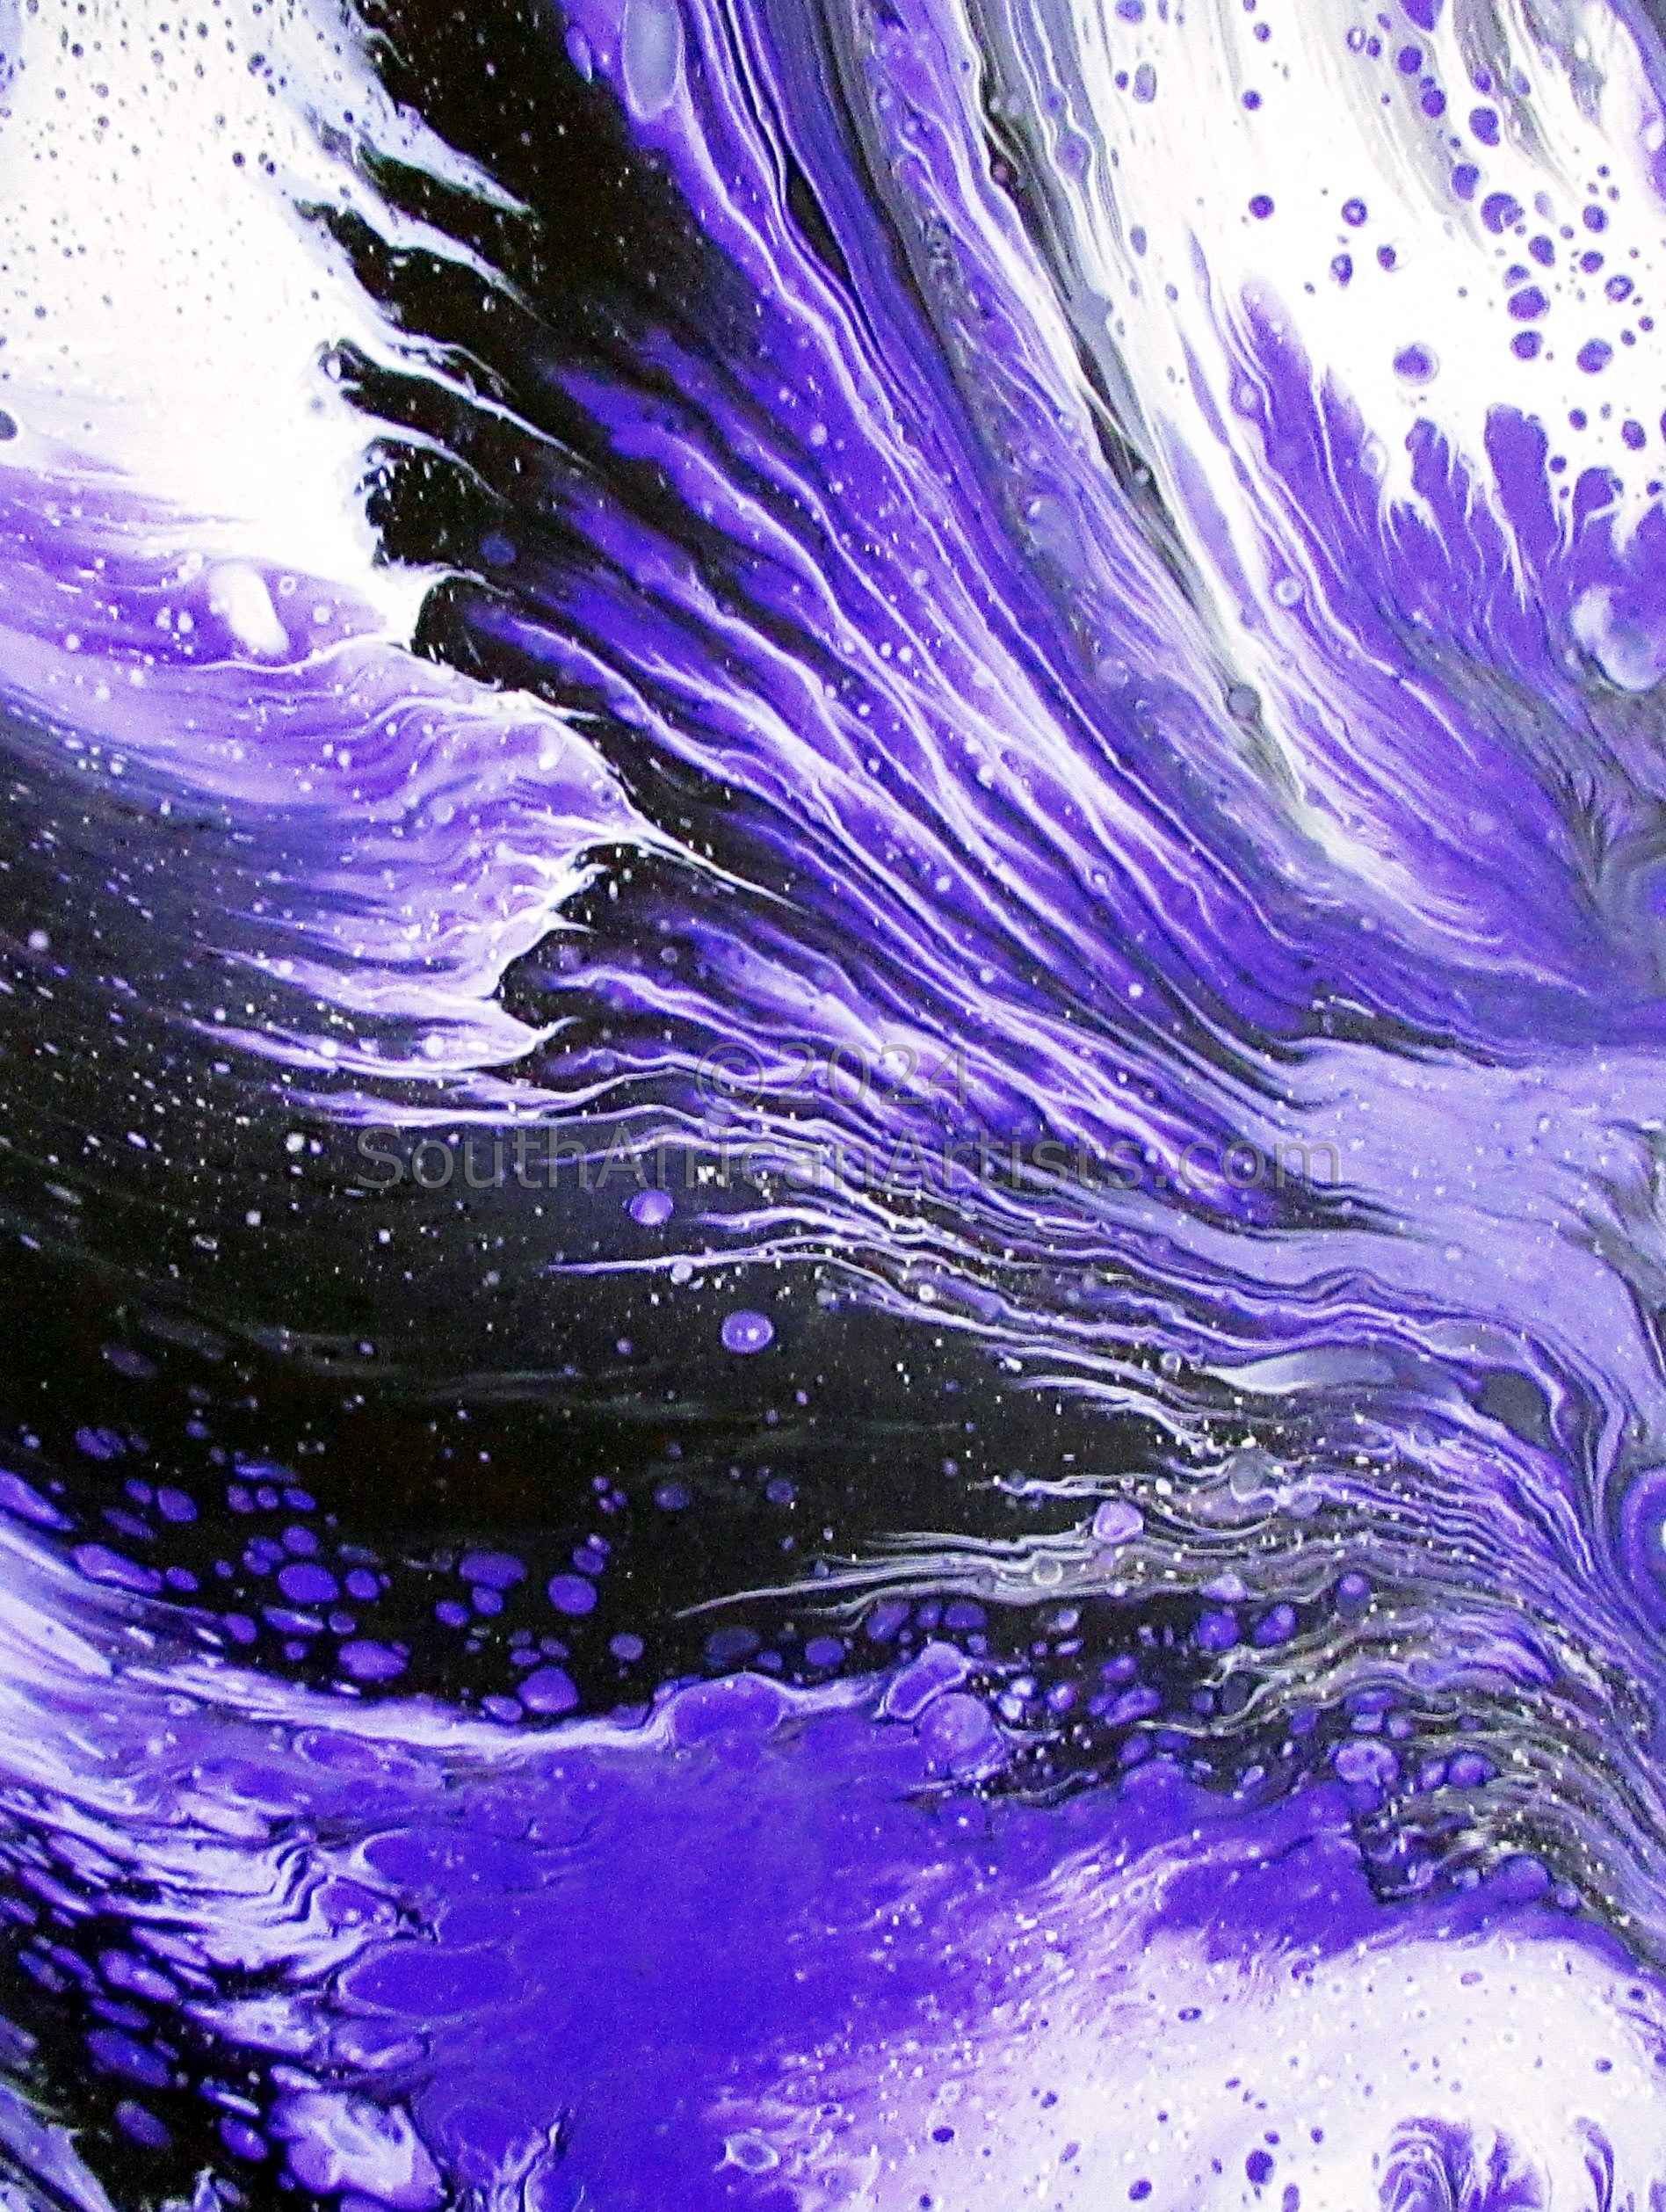 A Splash of Lavender